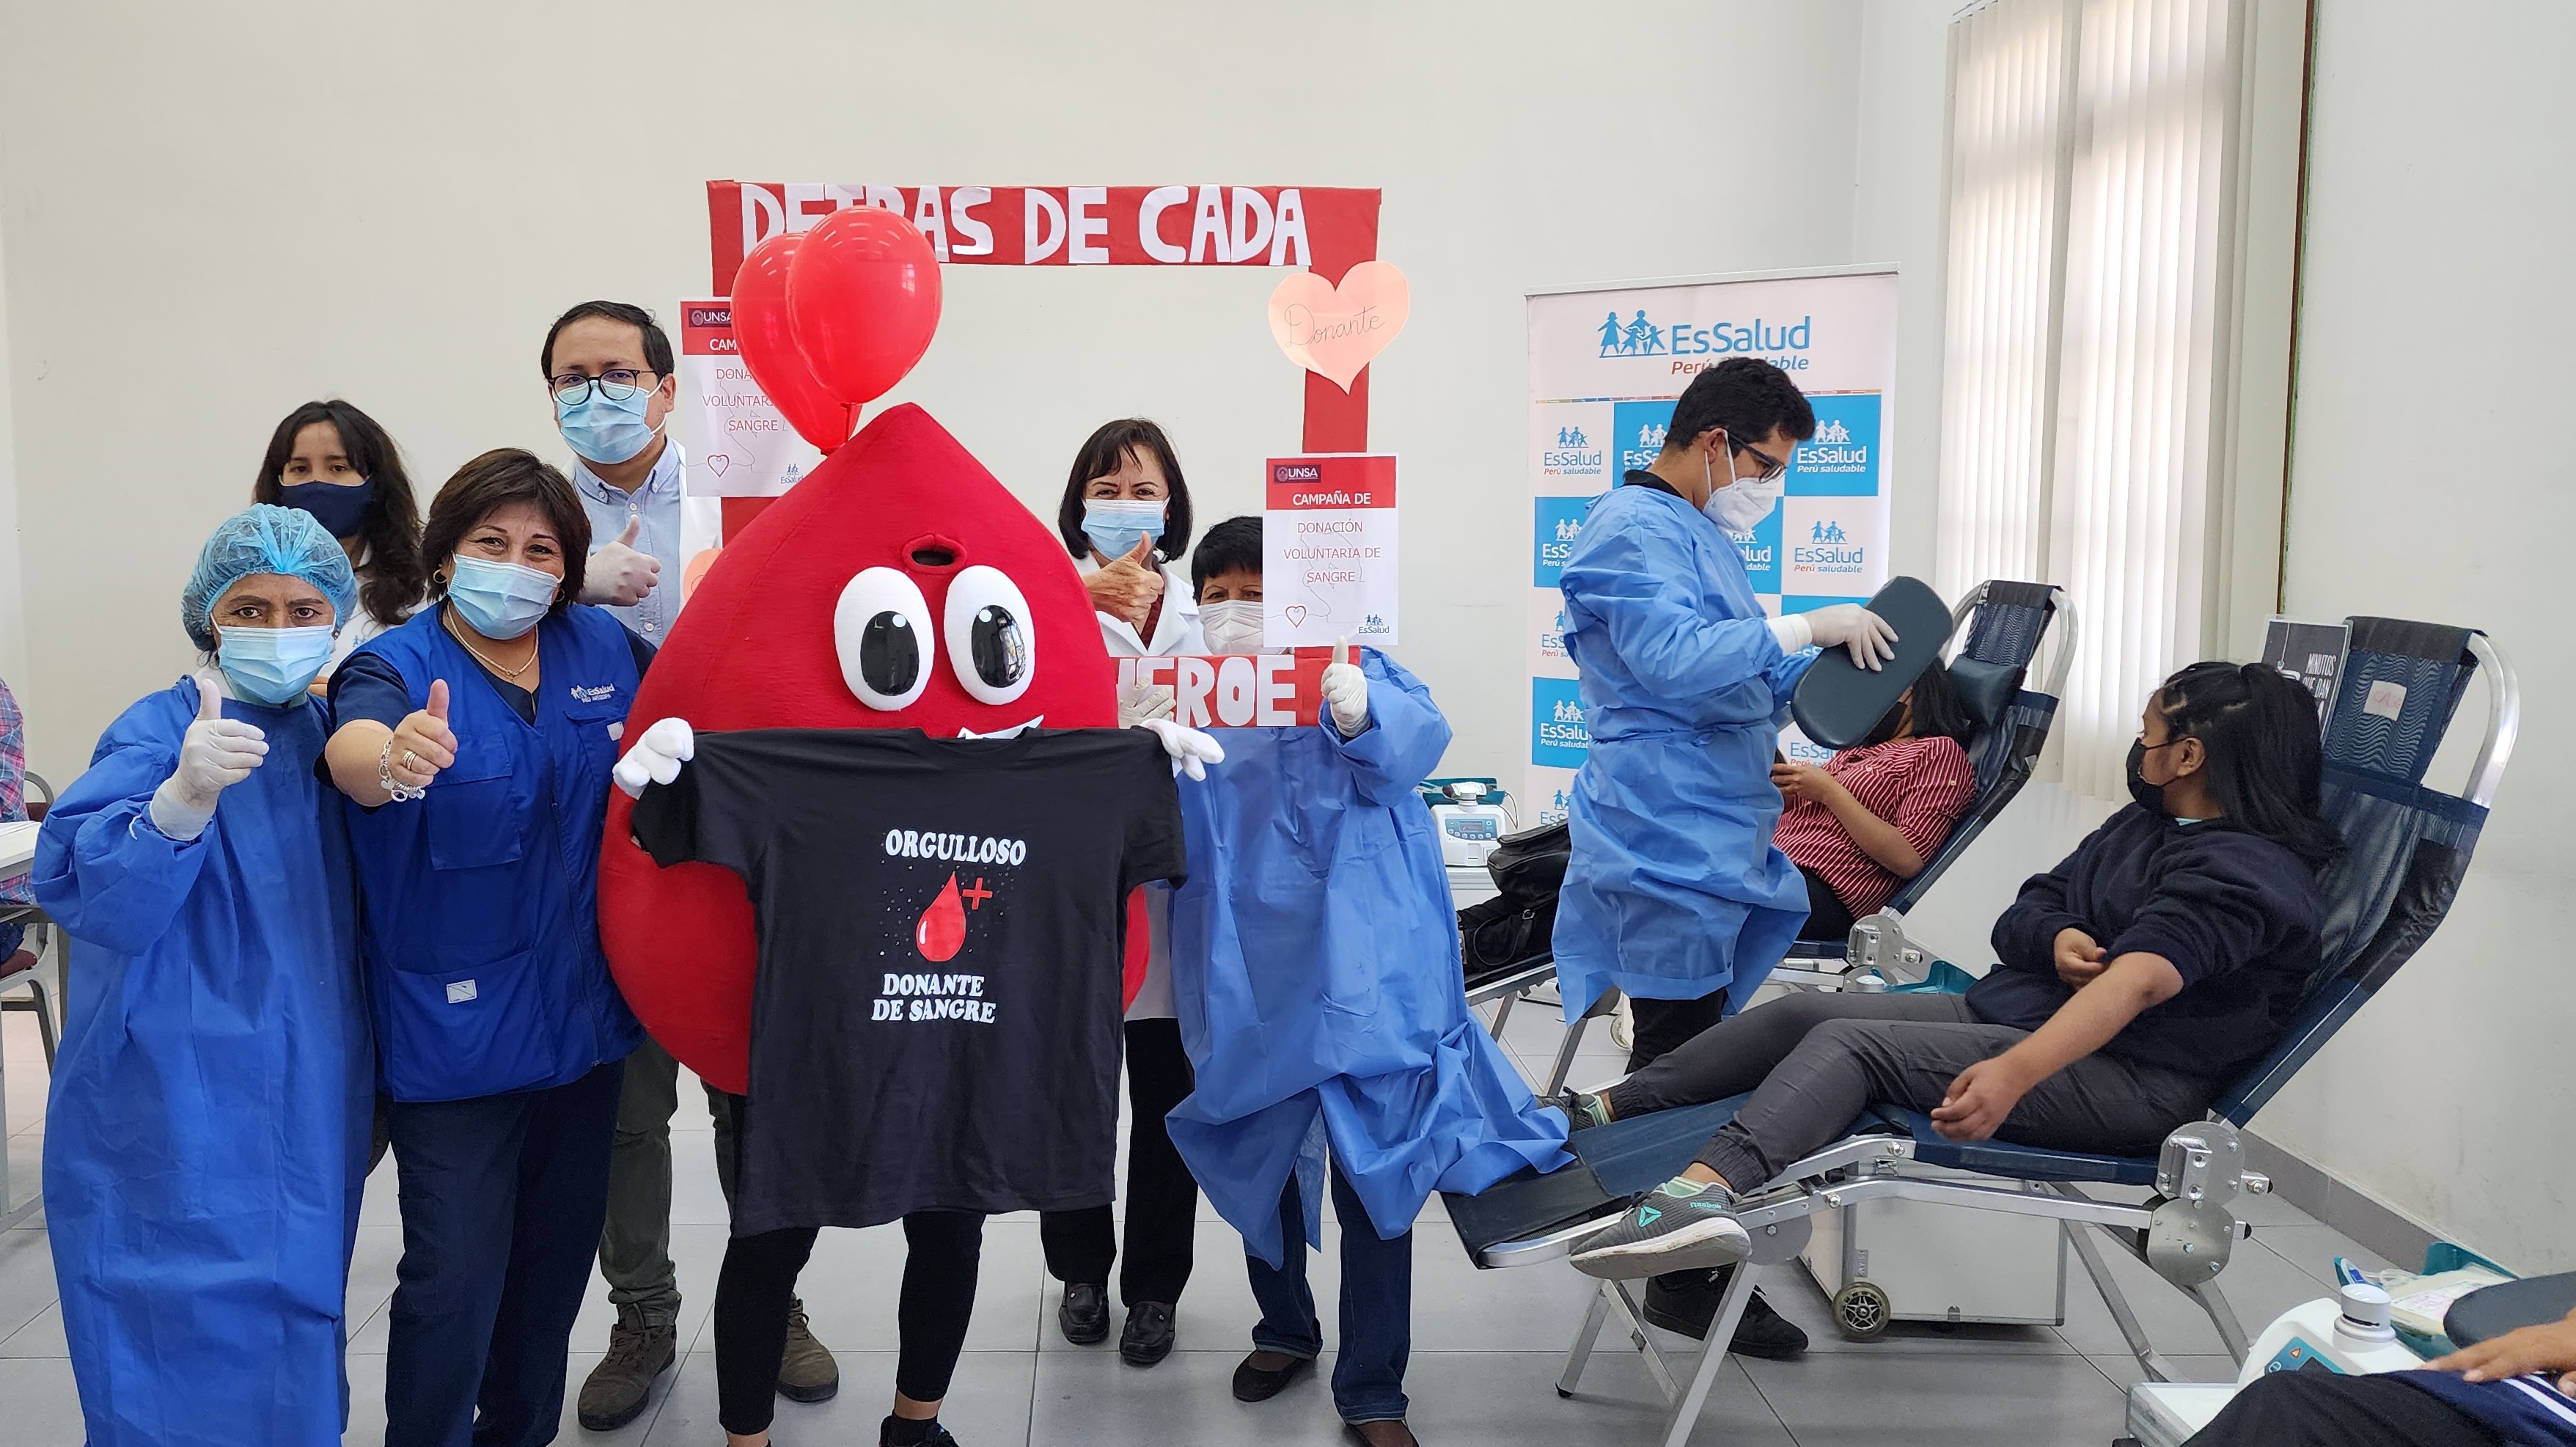 Essalud - EsSalud Arequipa promueve campaña de donación de sangre en la Universidad Nacional de San Agustín